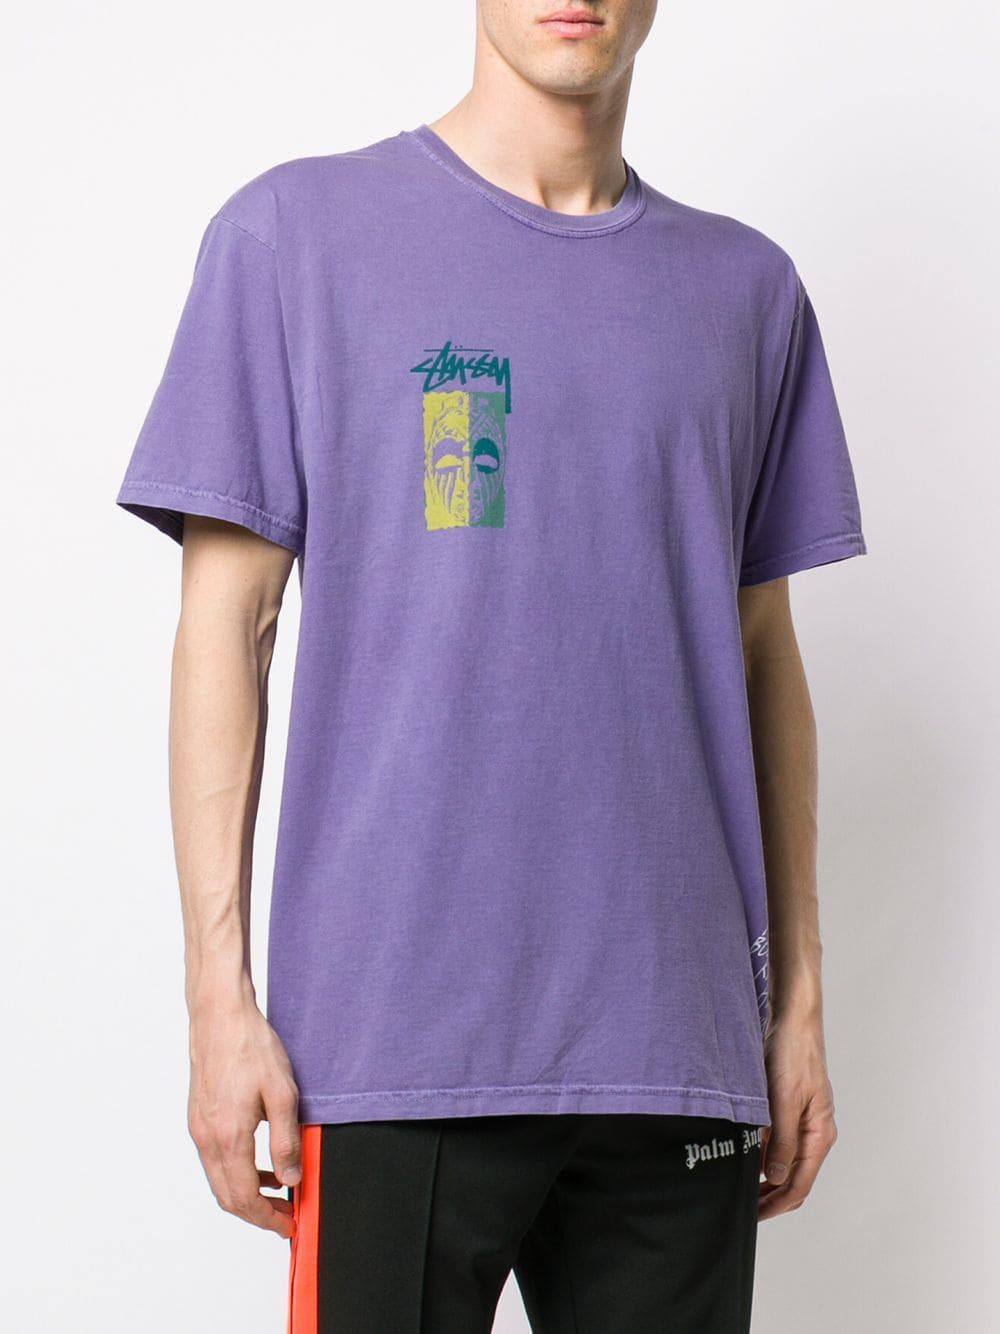 Stussy Rear Print T-shirt in Purple for Men - Lyst